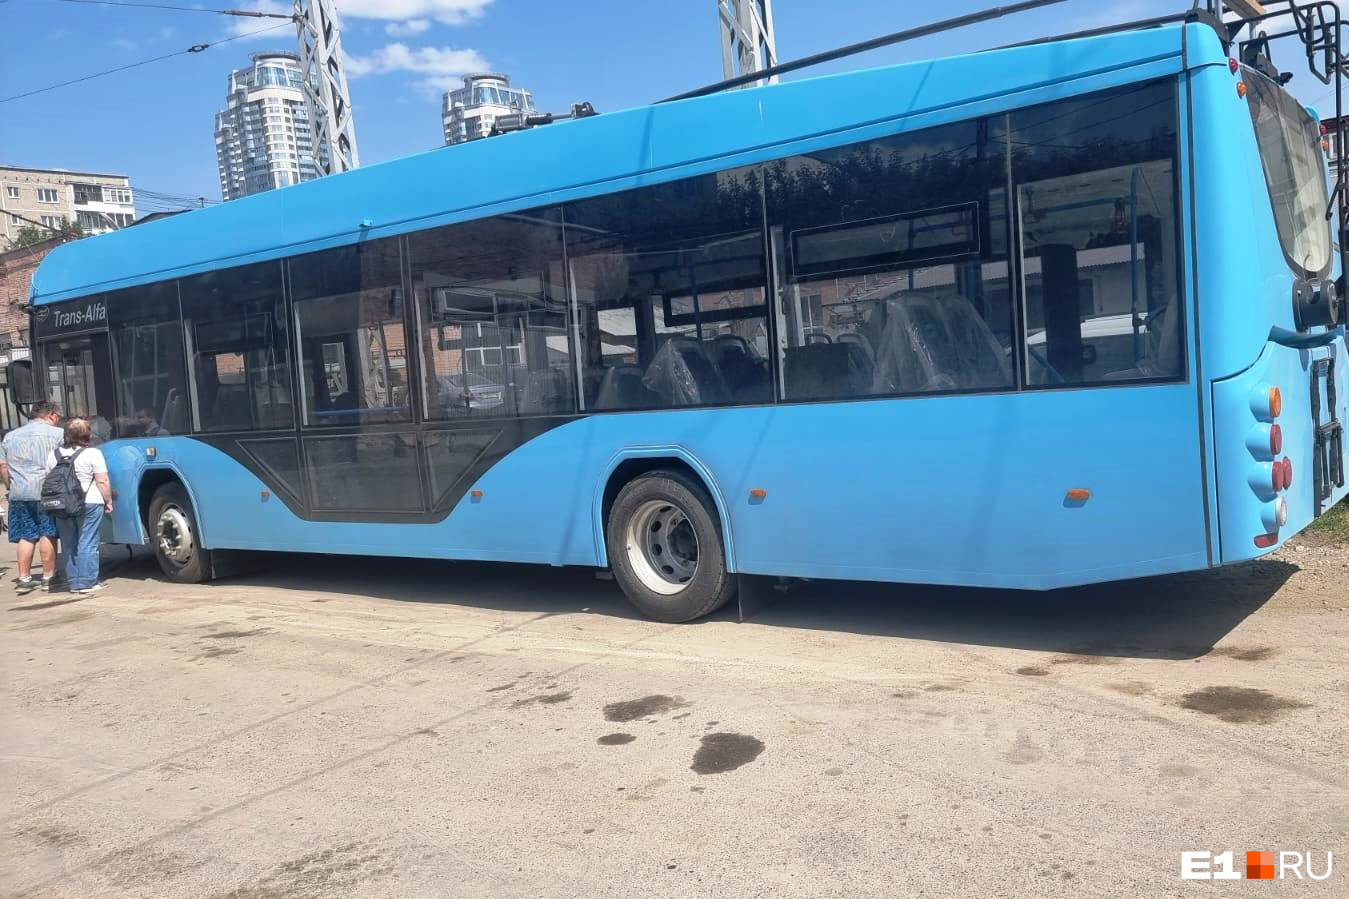 В Екатеринбург привезли красивый «прозрачный» троллейбус. Такие машины ходят в Питере